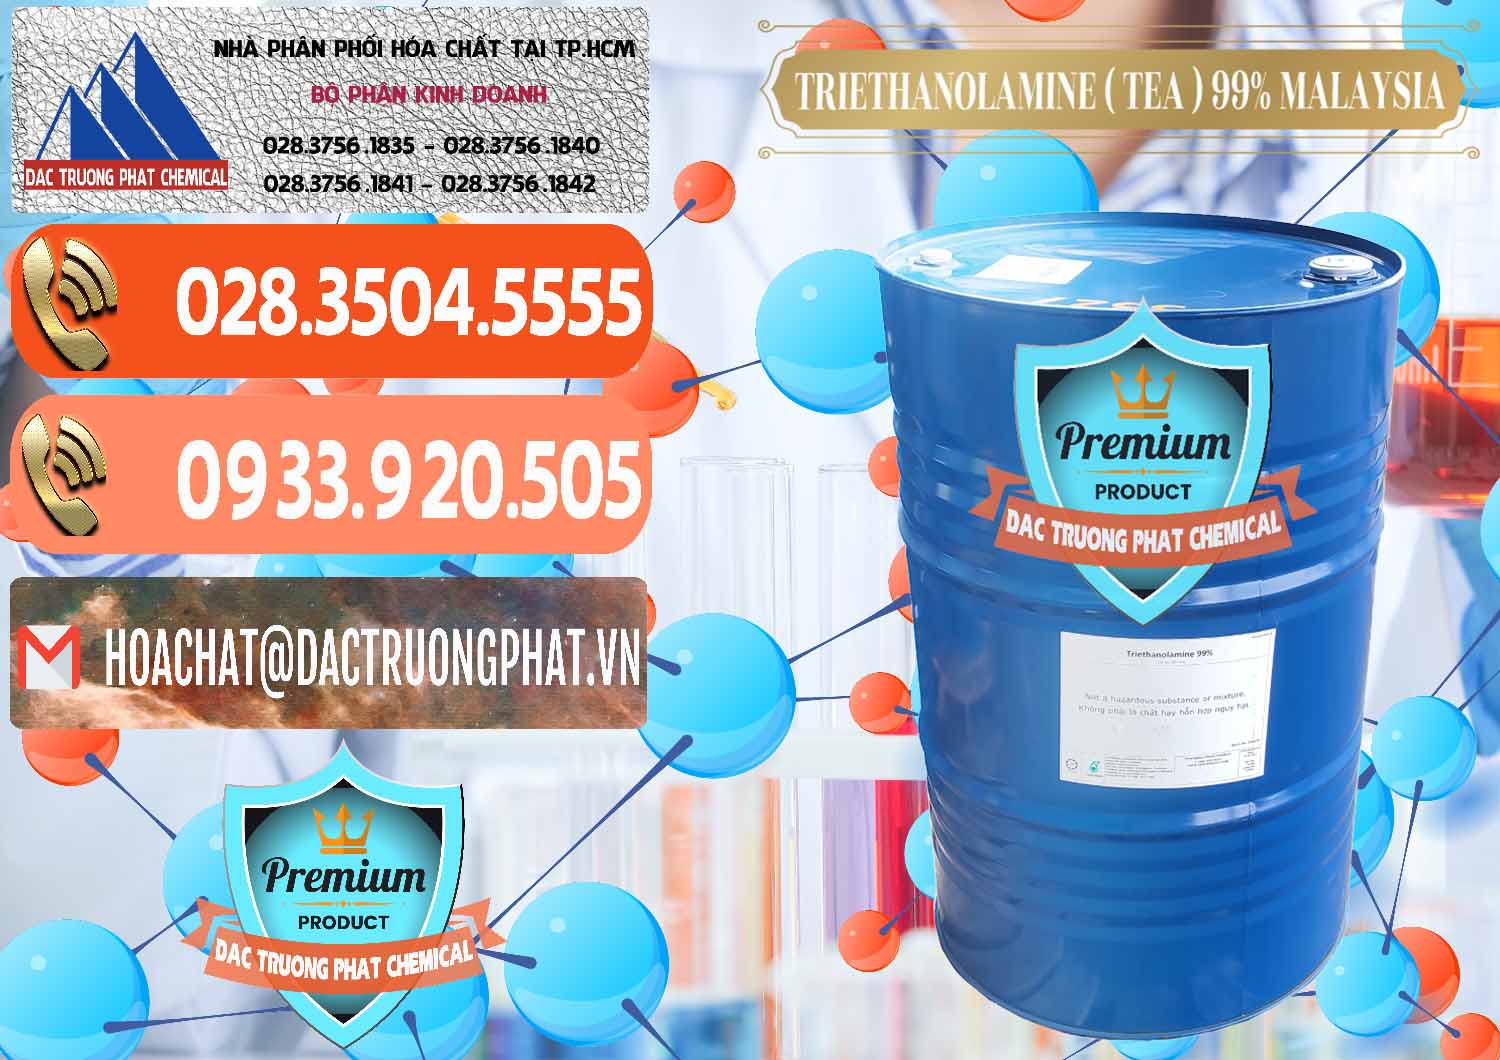 Cty bán & cung ứng TEA - Triethanolamine 99% Mã Lai Malaysia - 0323 - Chuyên bán ( phân phối ) hóa chất tại TP.HCM - hoachatmientay.com